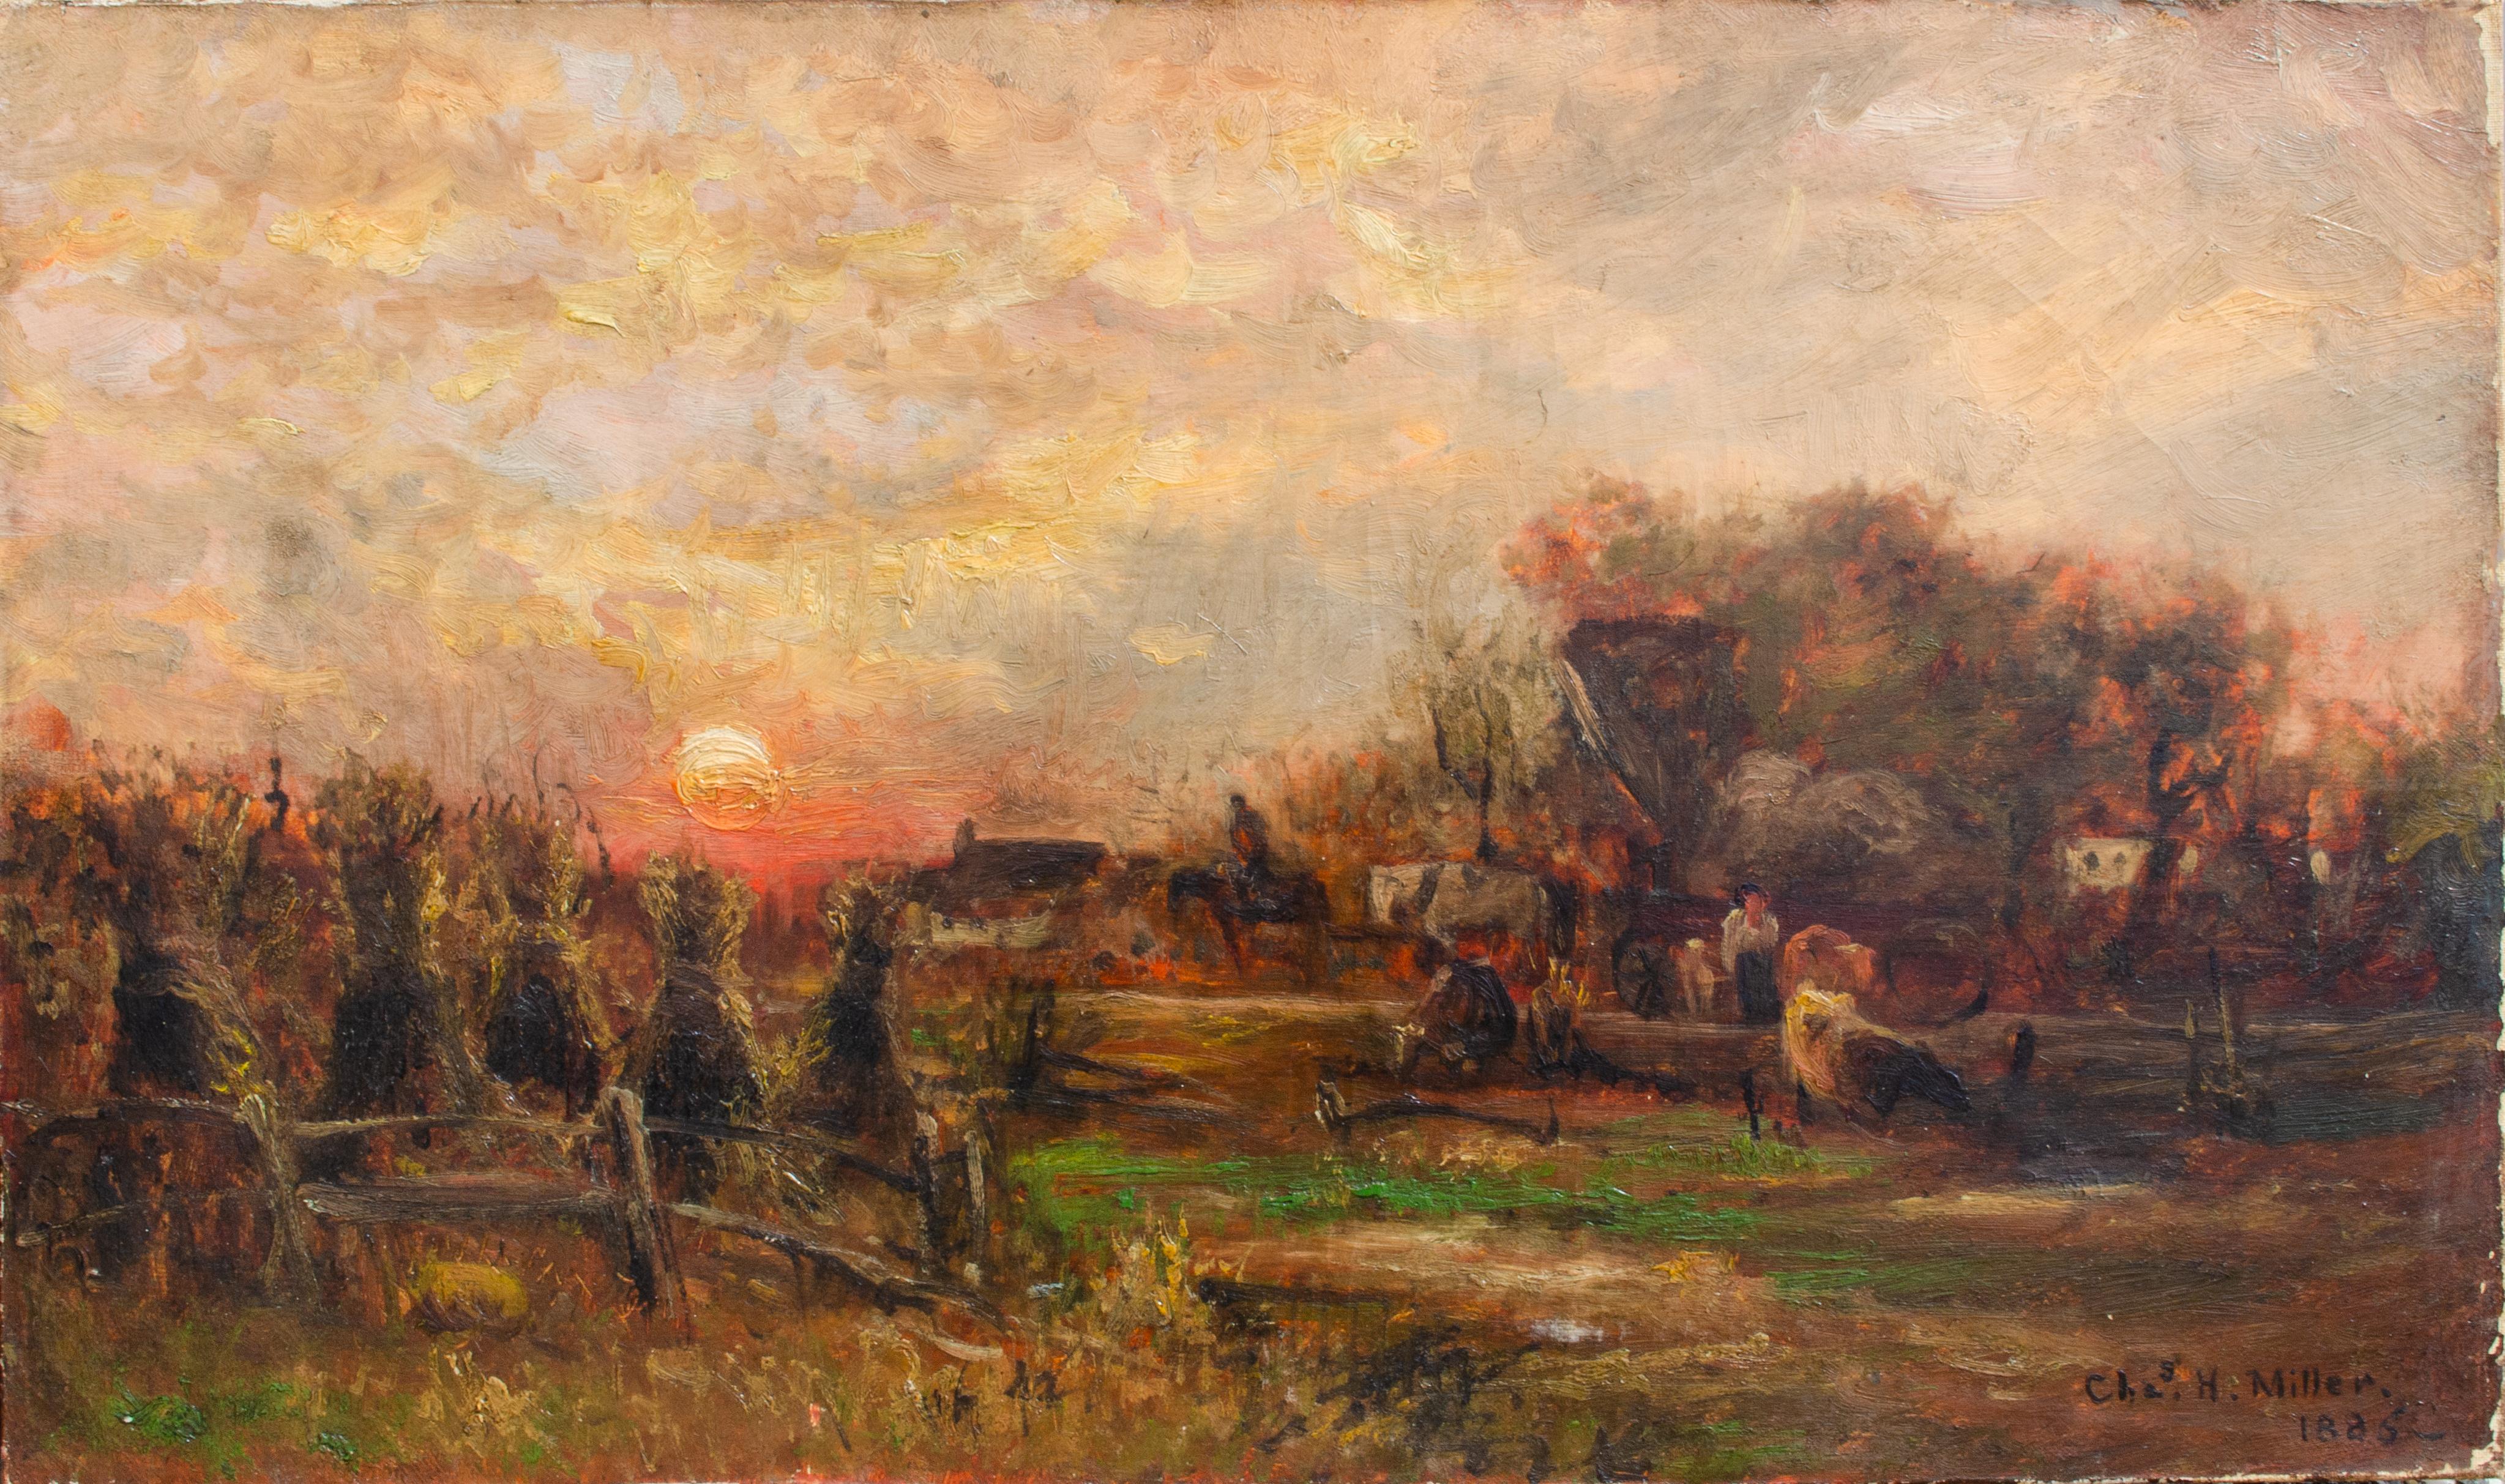 Landscape Painting Charles Henry Miller - La ferme au crépuscule de l'artiste Charles H. Miller, Long Island, 1865